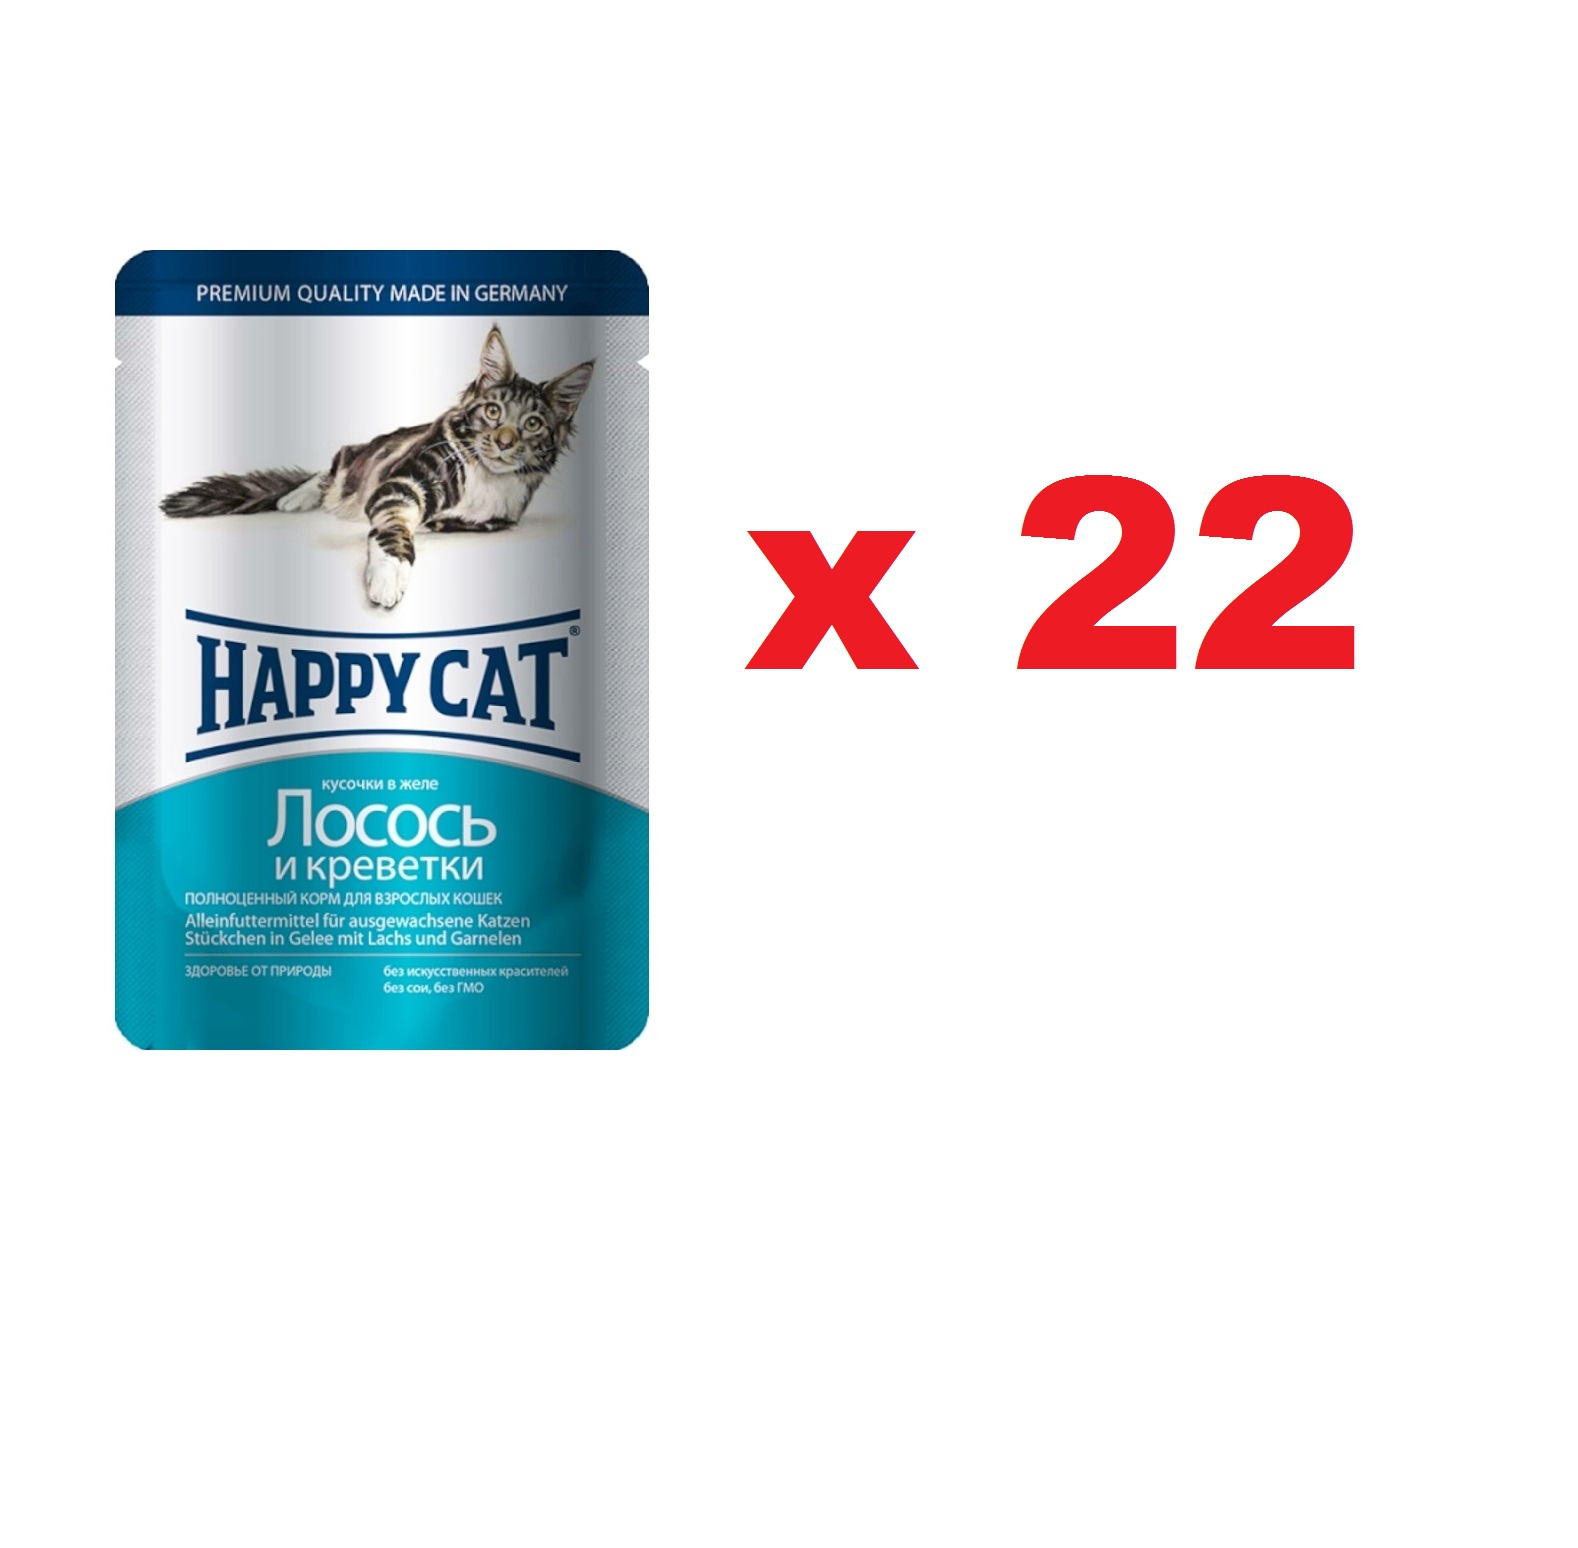 Хэппи Кэт пауч 100гр - Желе - Лосось/Креветки (Happy Cat)  1кор = 22шт